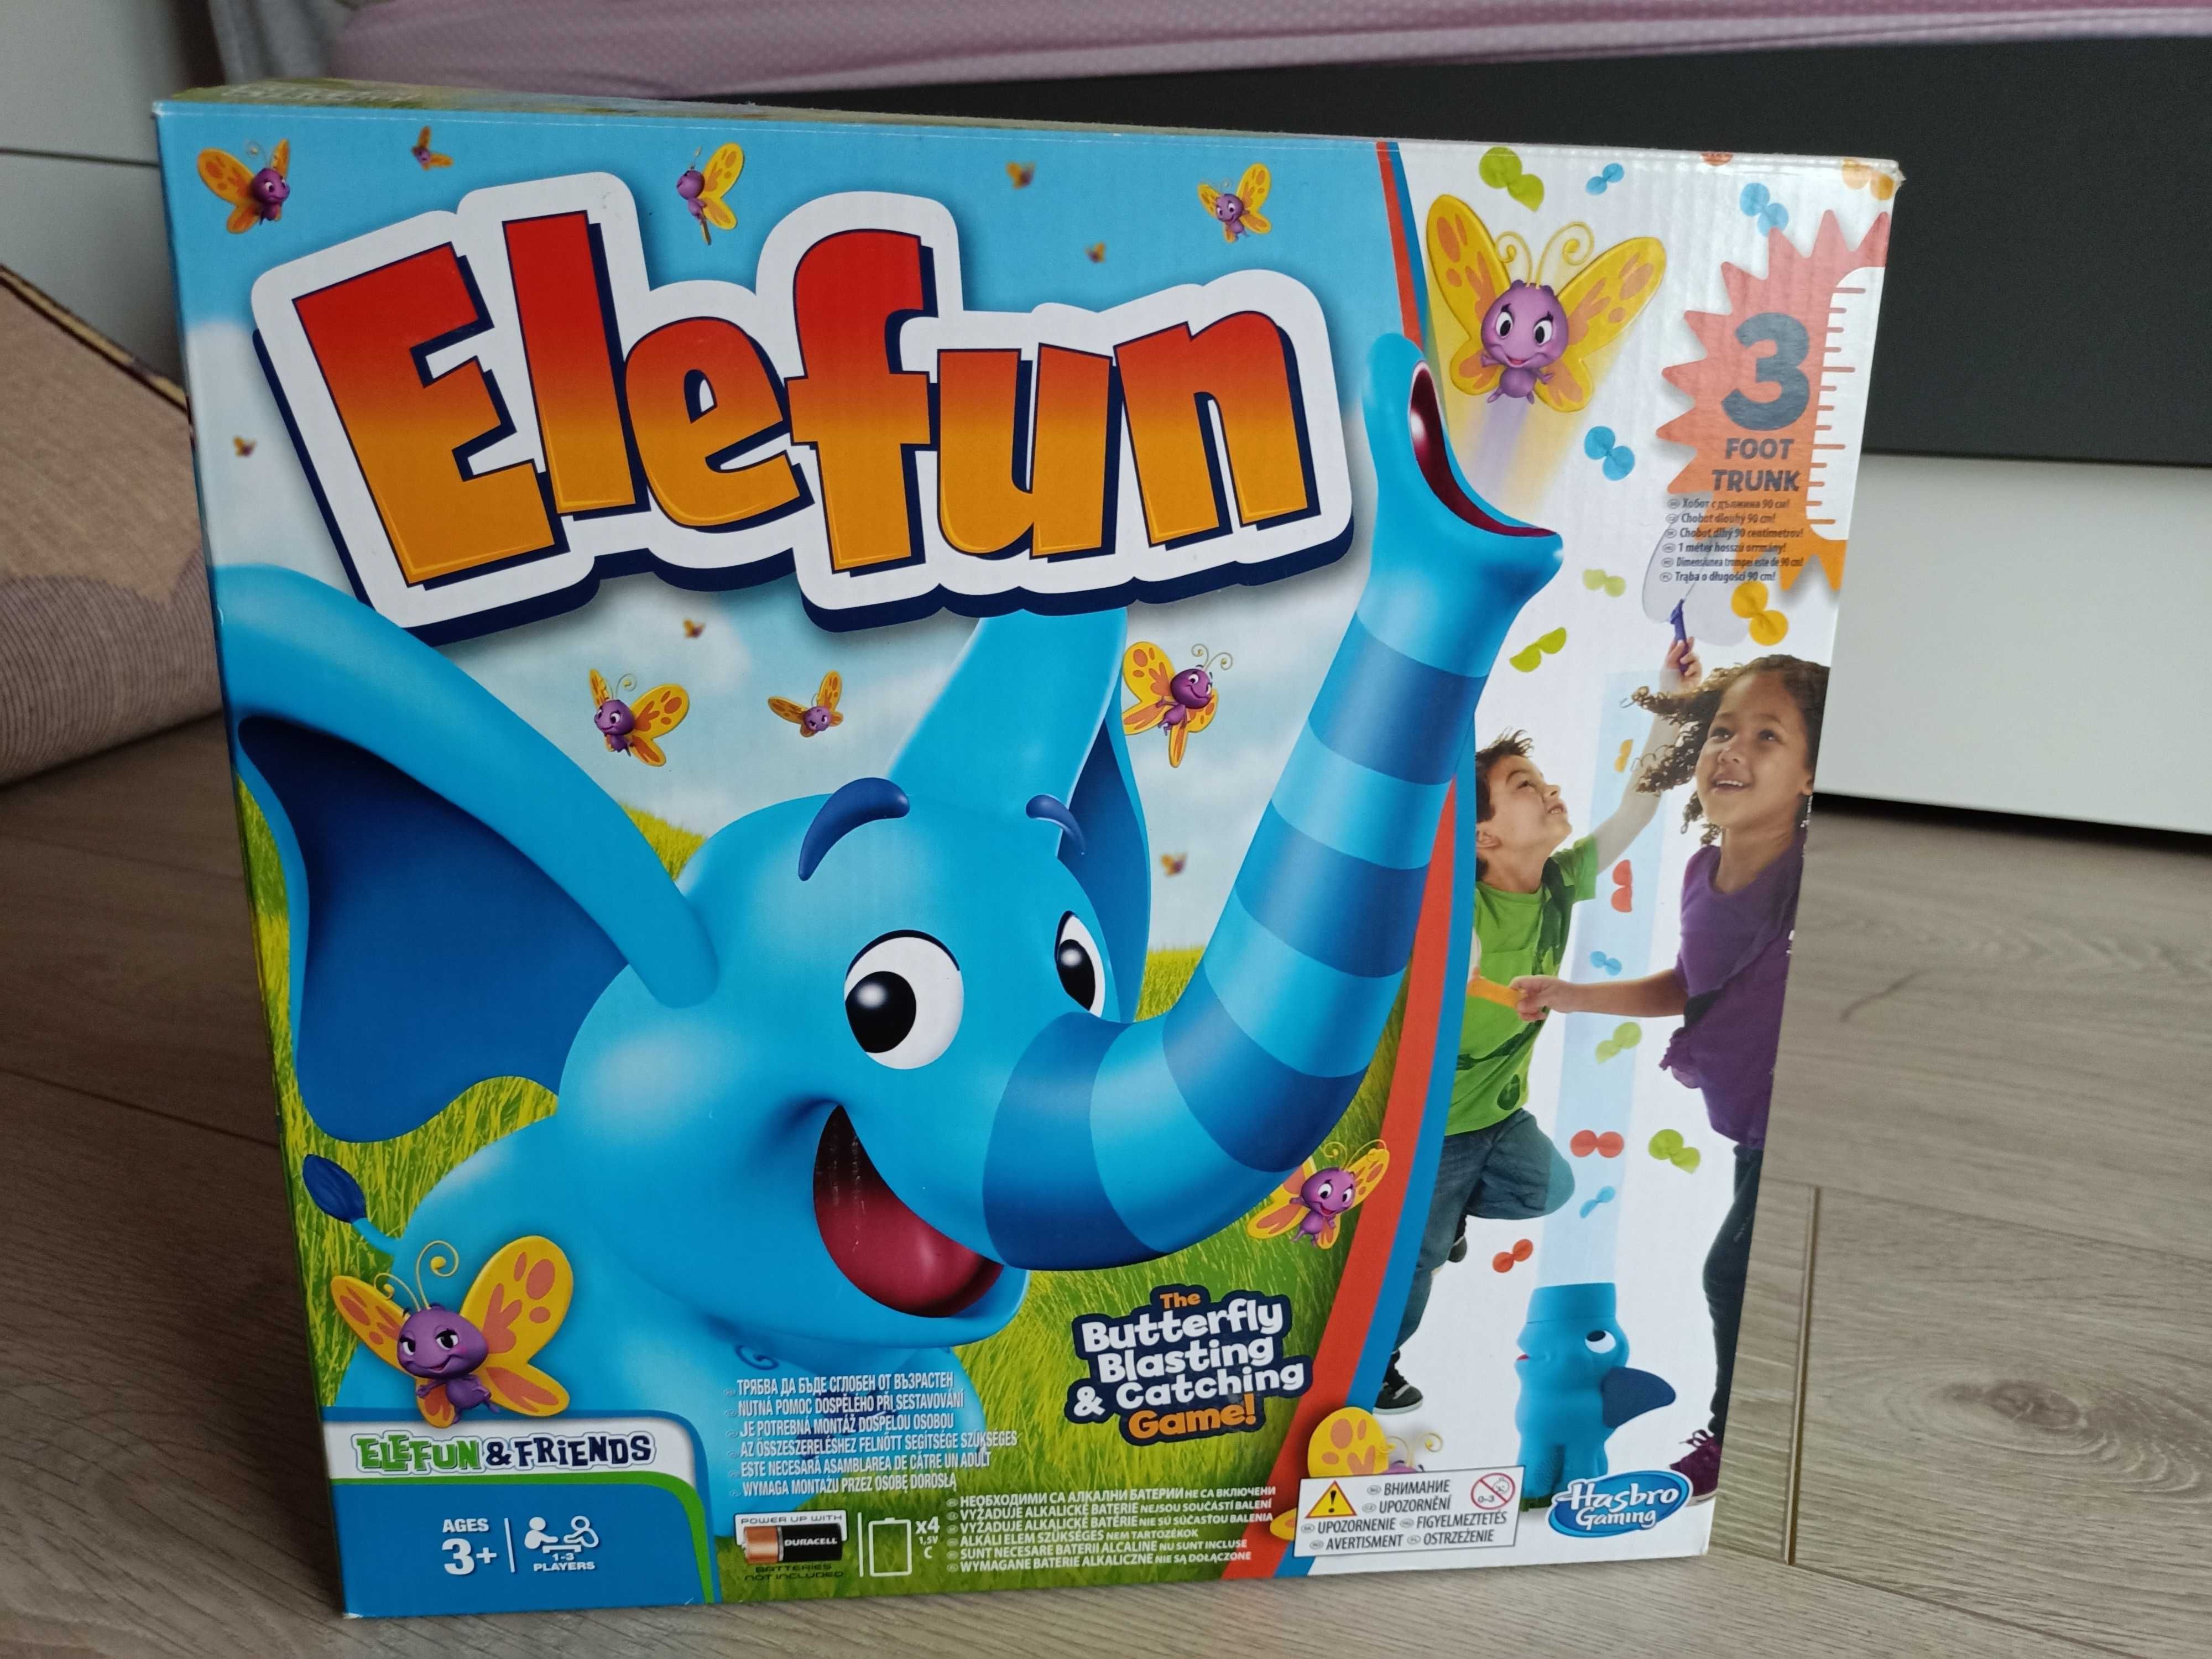 Zabawka Elefun firmy Hasbro - łapanie motylków w siatki.